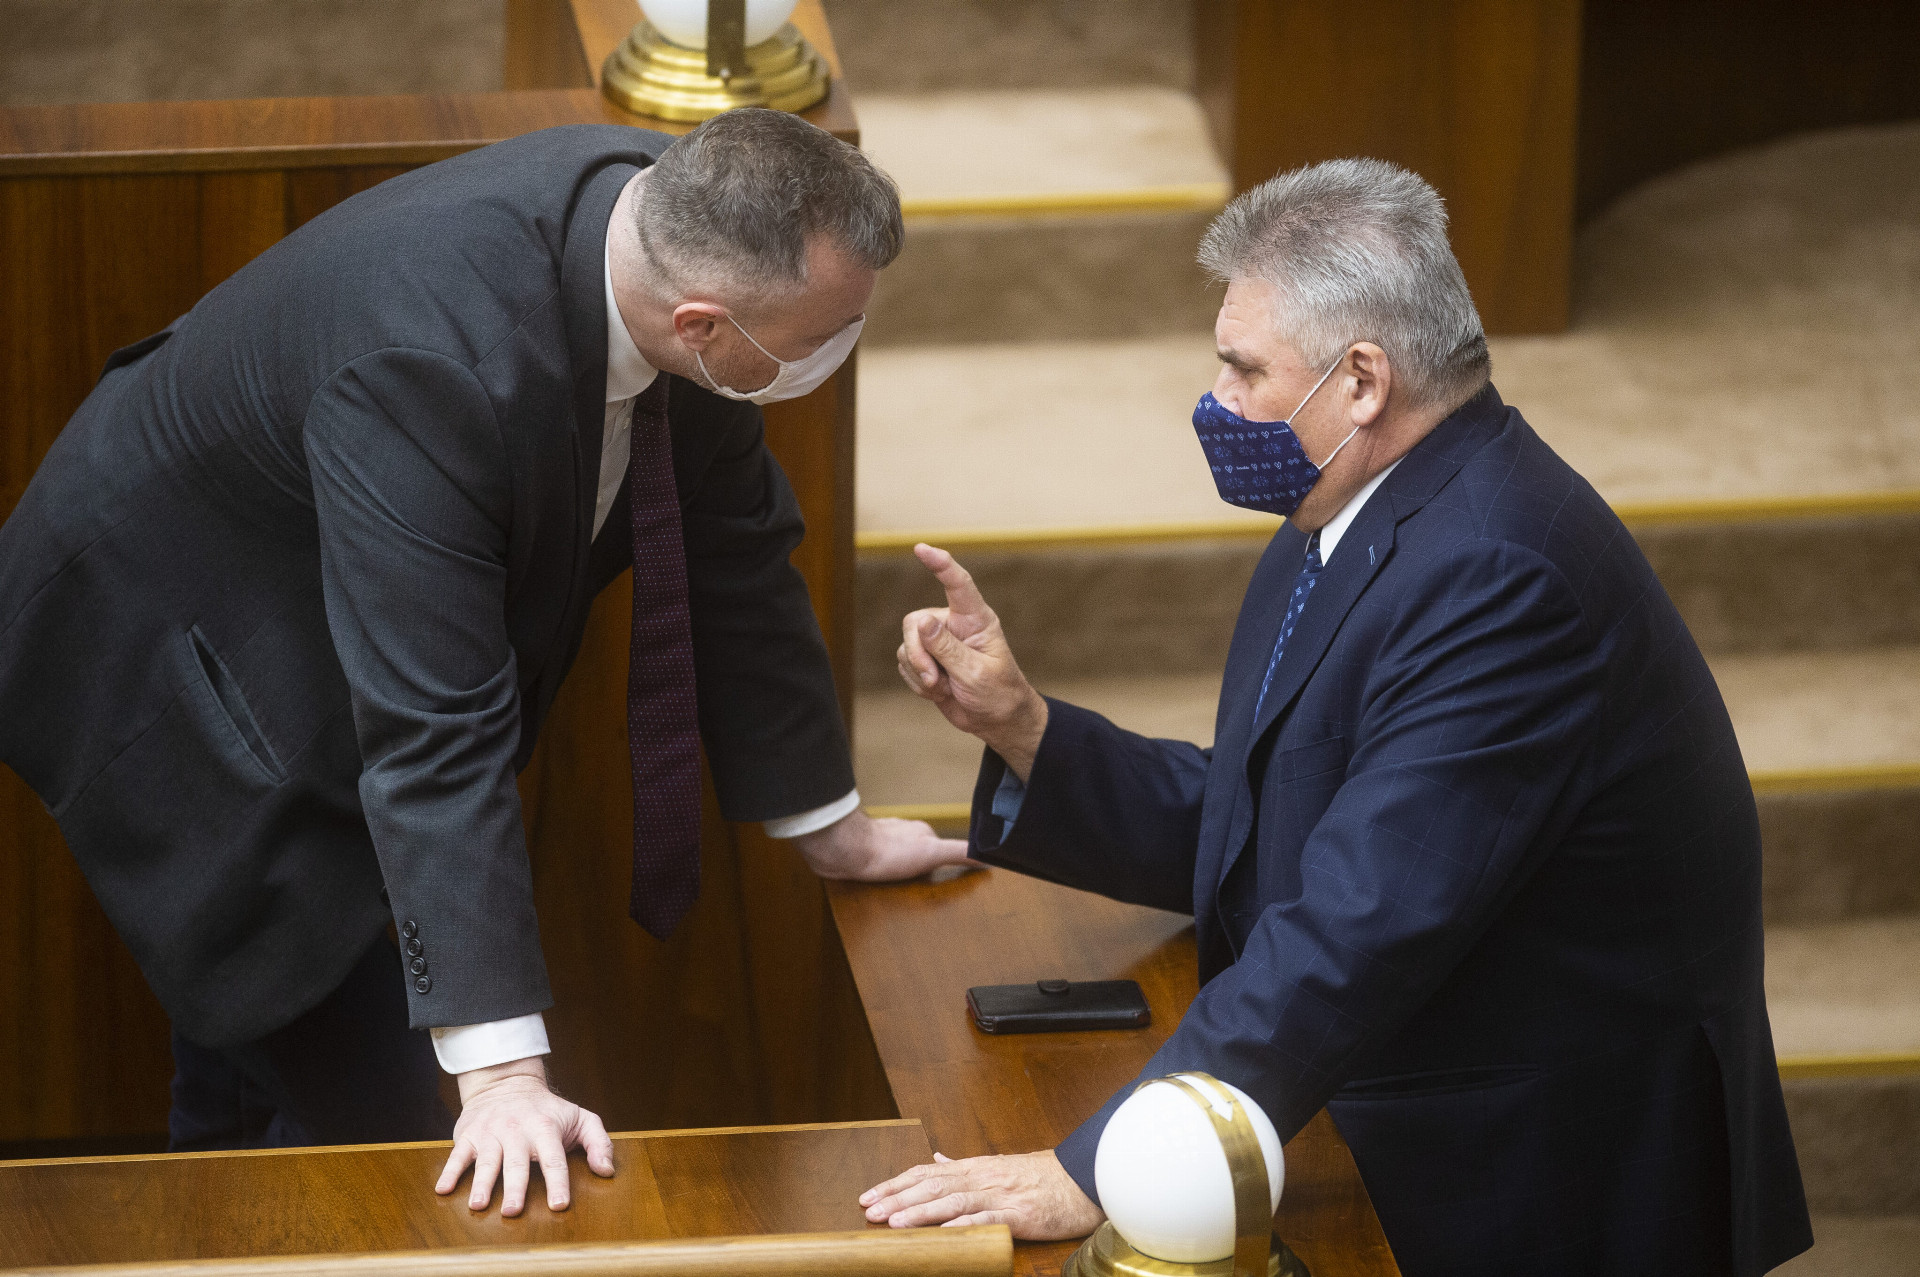 Ministrovi práce Milanovi Krajniakovi (vľavo) sa už v parlamente podarilo presadiť prvé zmeny oproti nastaveniu penzijného systému z čias jeho predchodcu Jána Richtera.